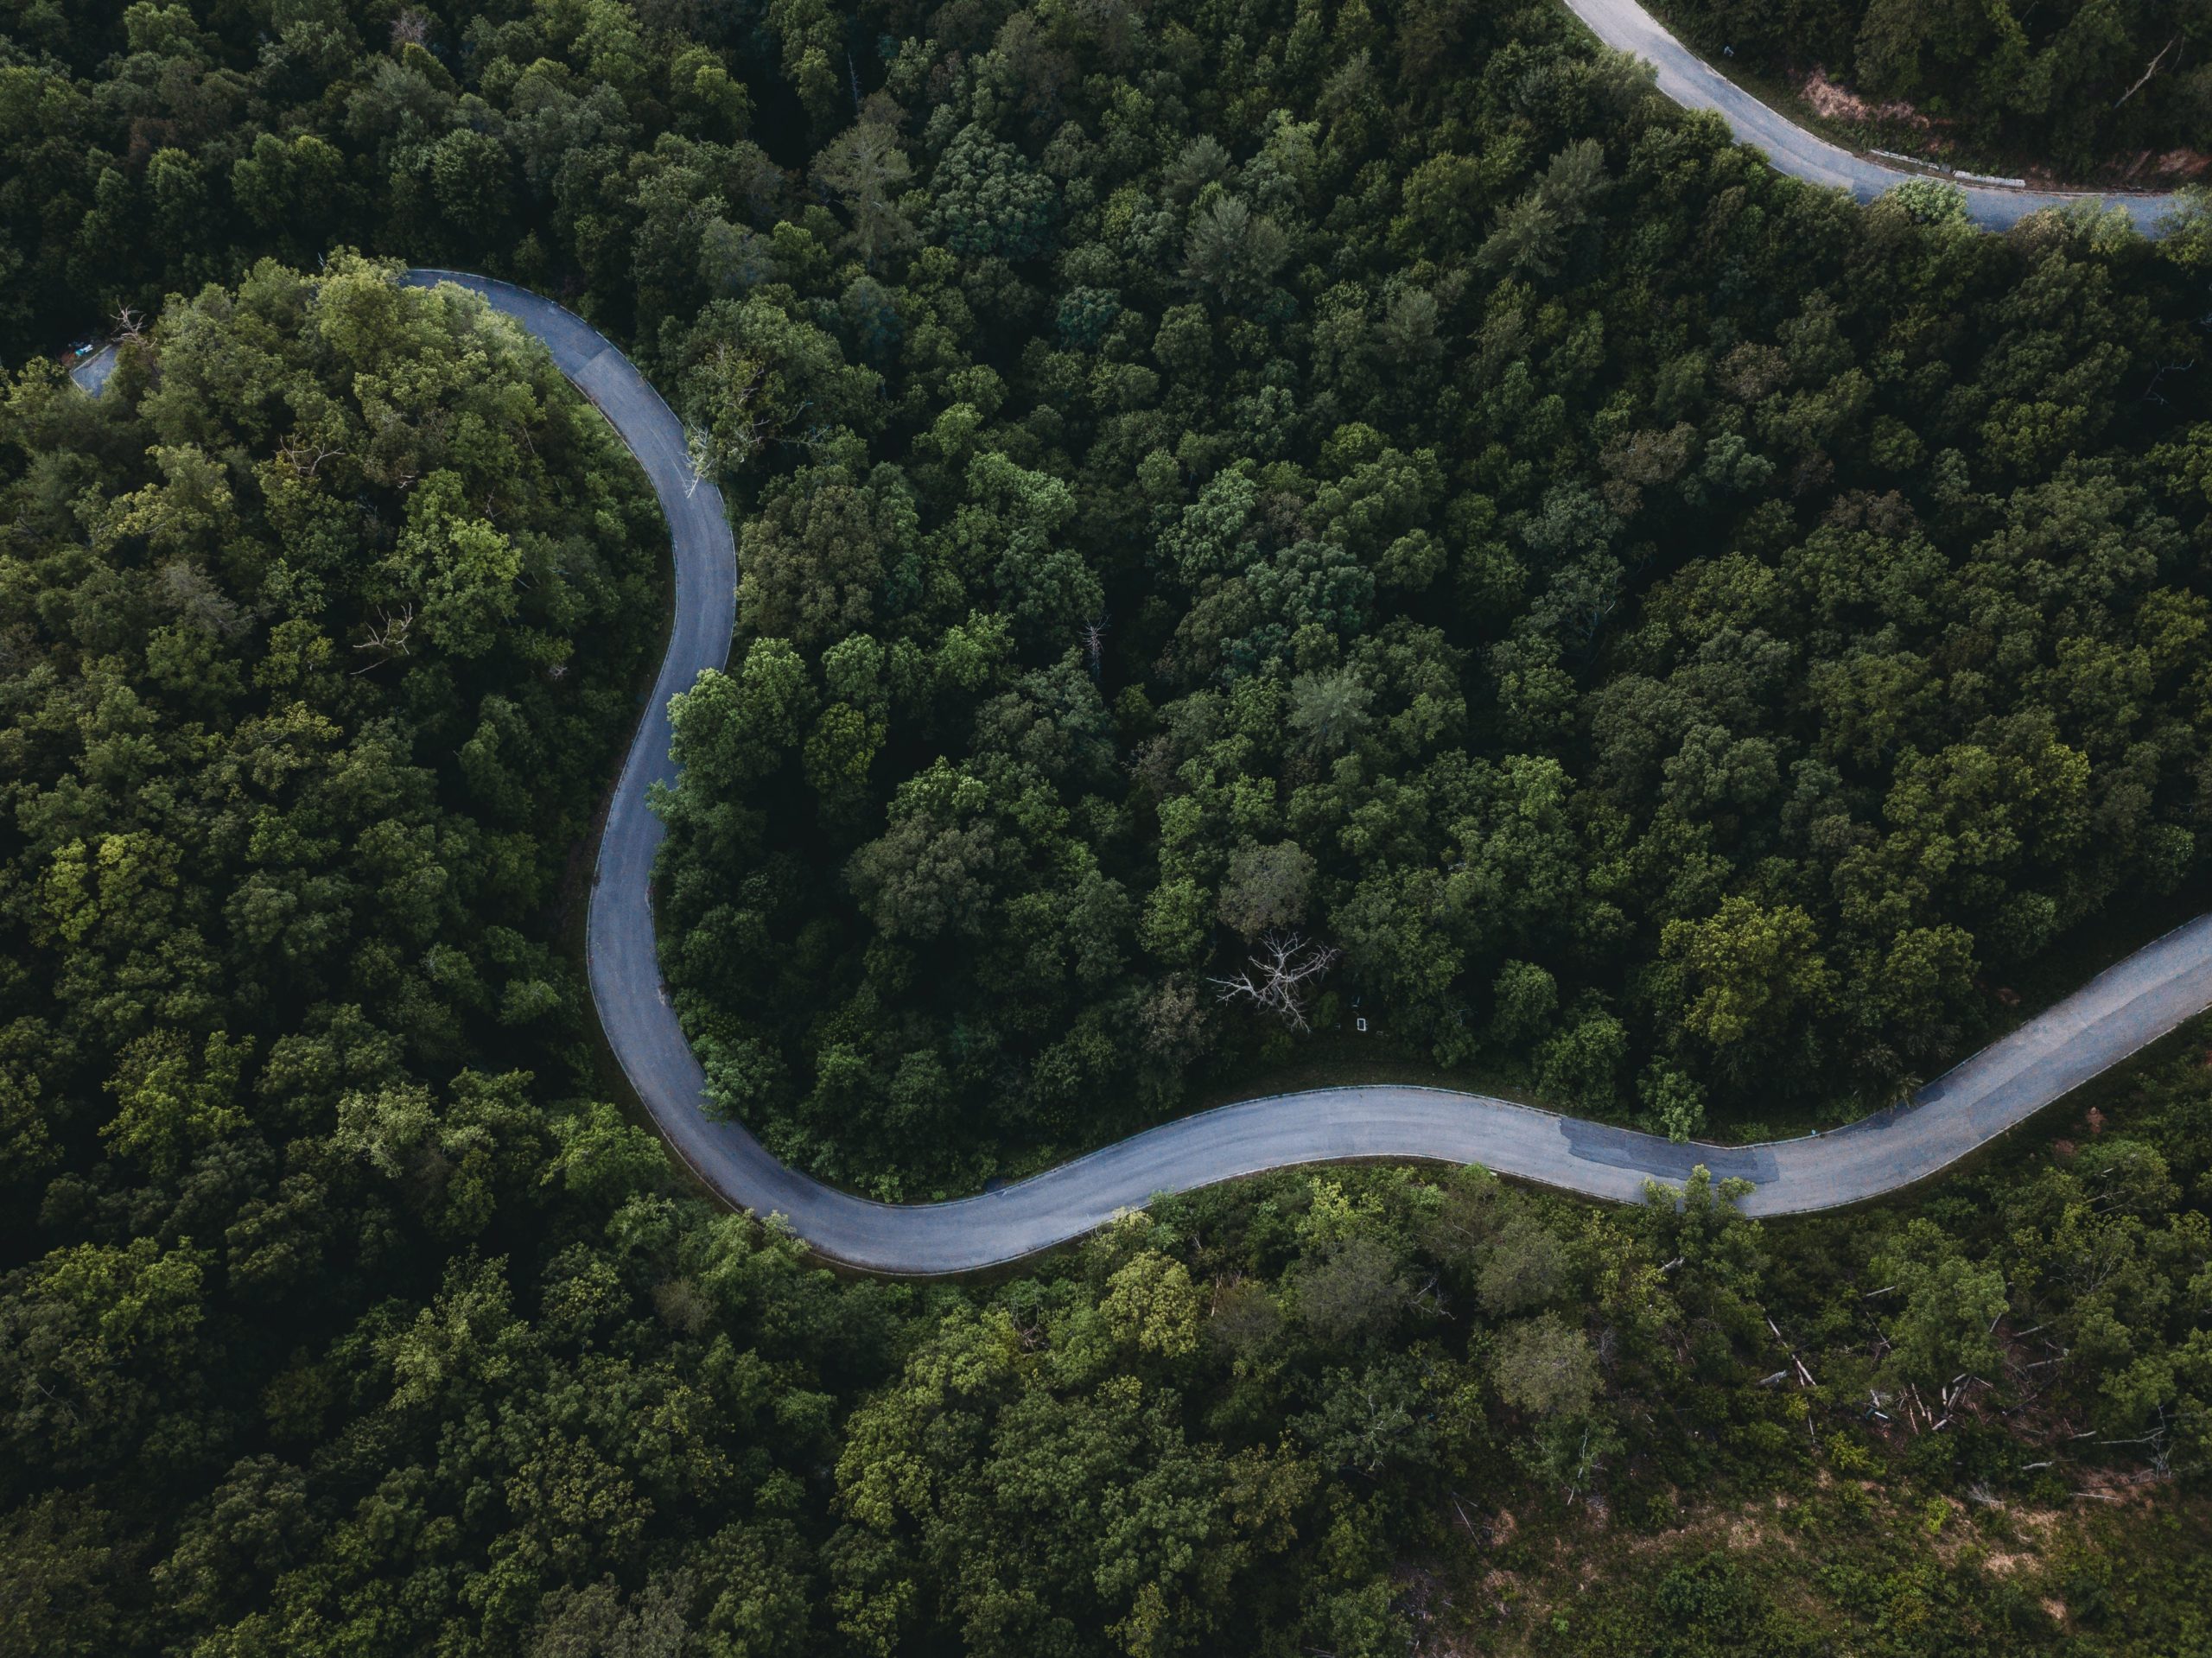 Vue aérienne d'une route sinueuse dans la forêt, entourée d'un feuillage luxuriant.